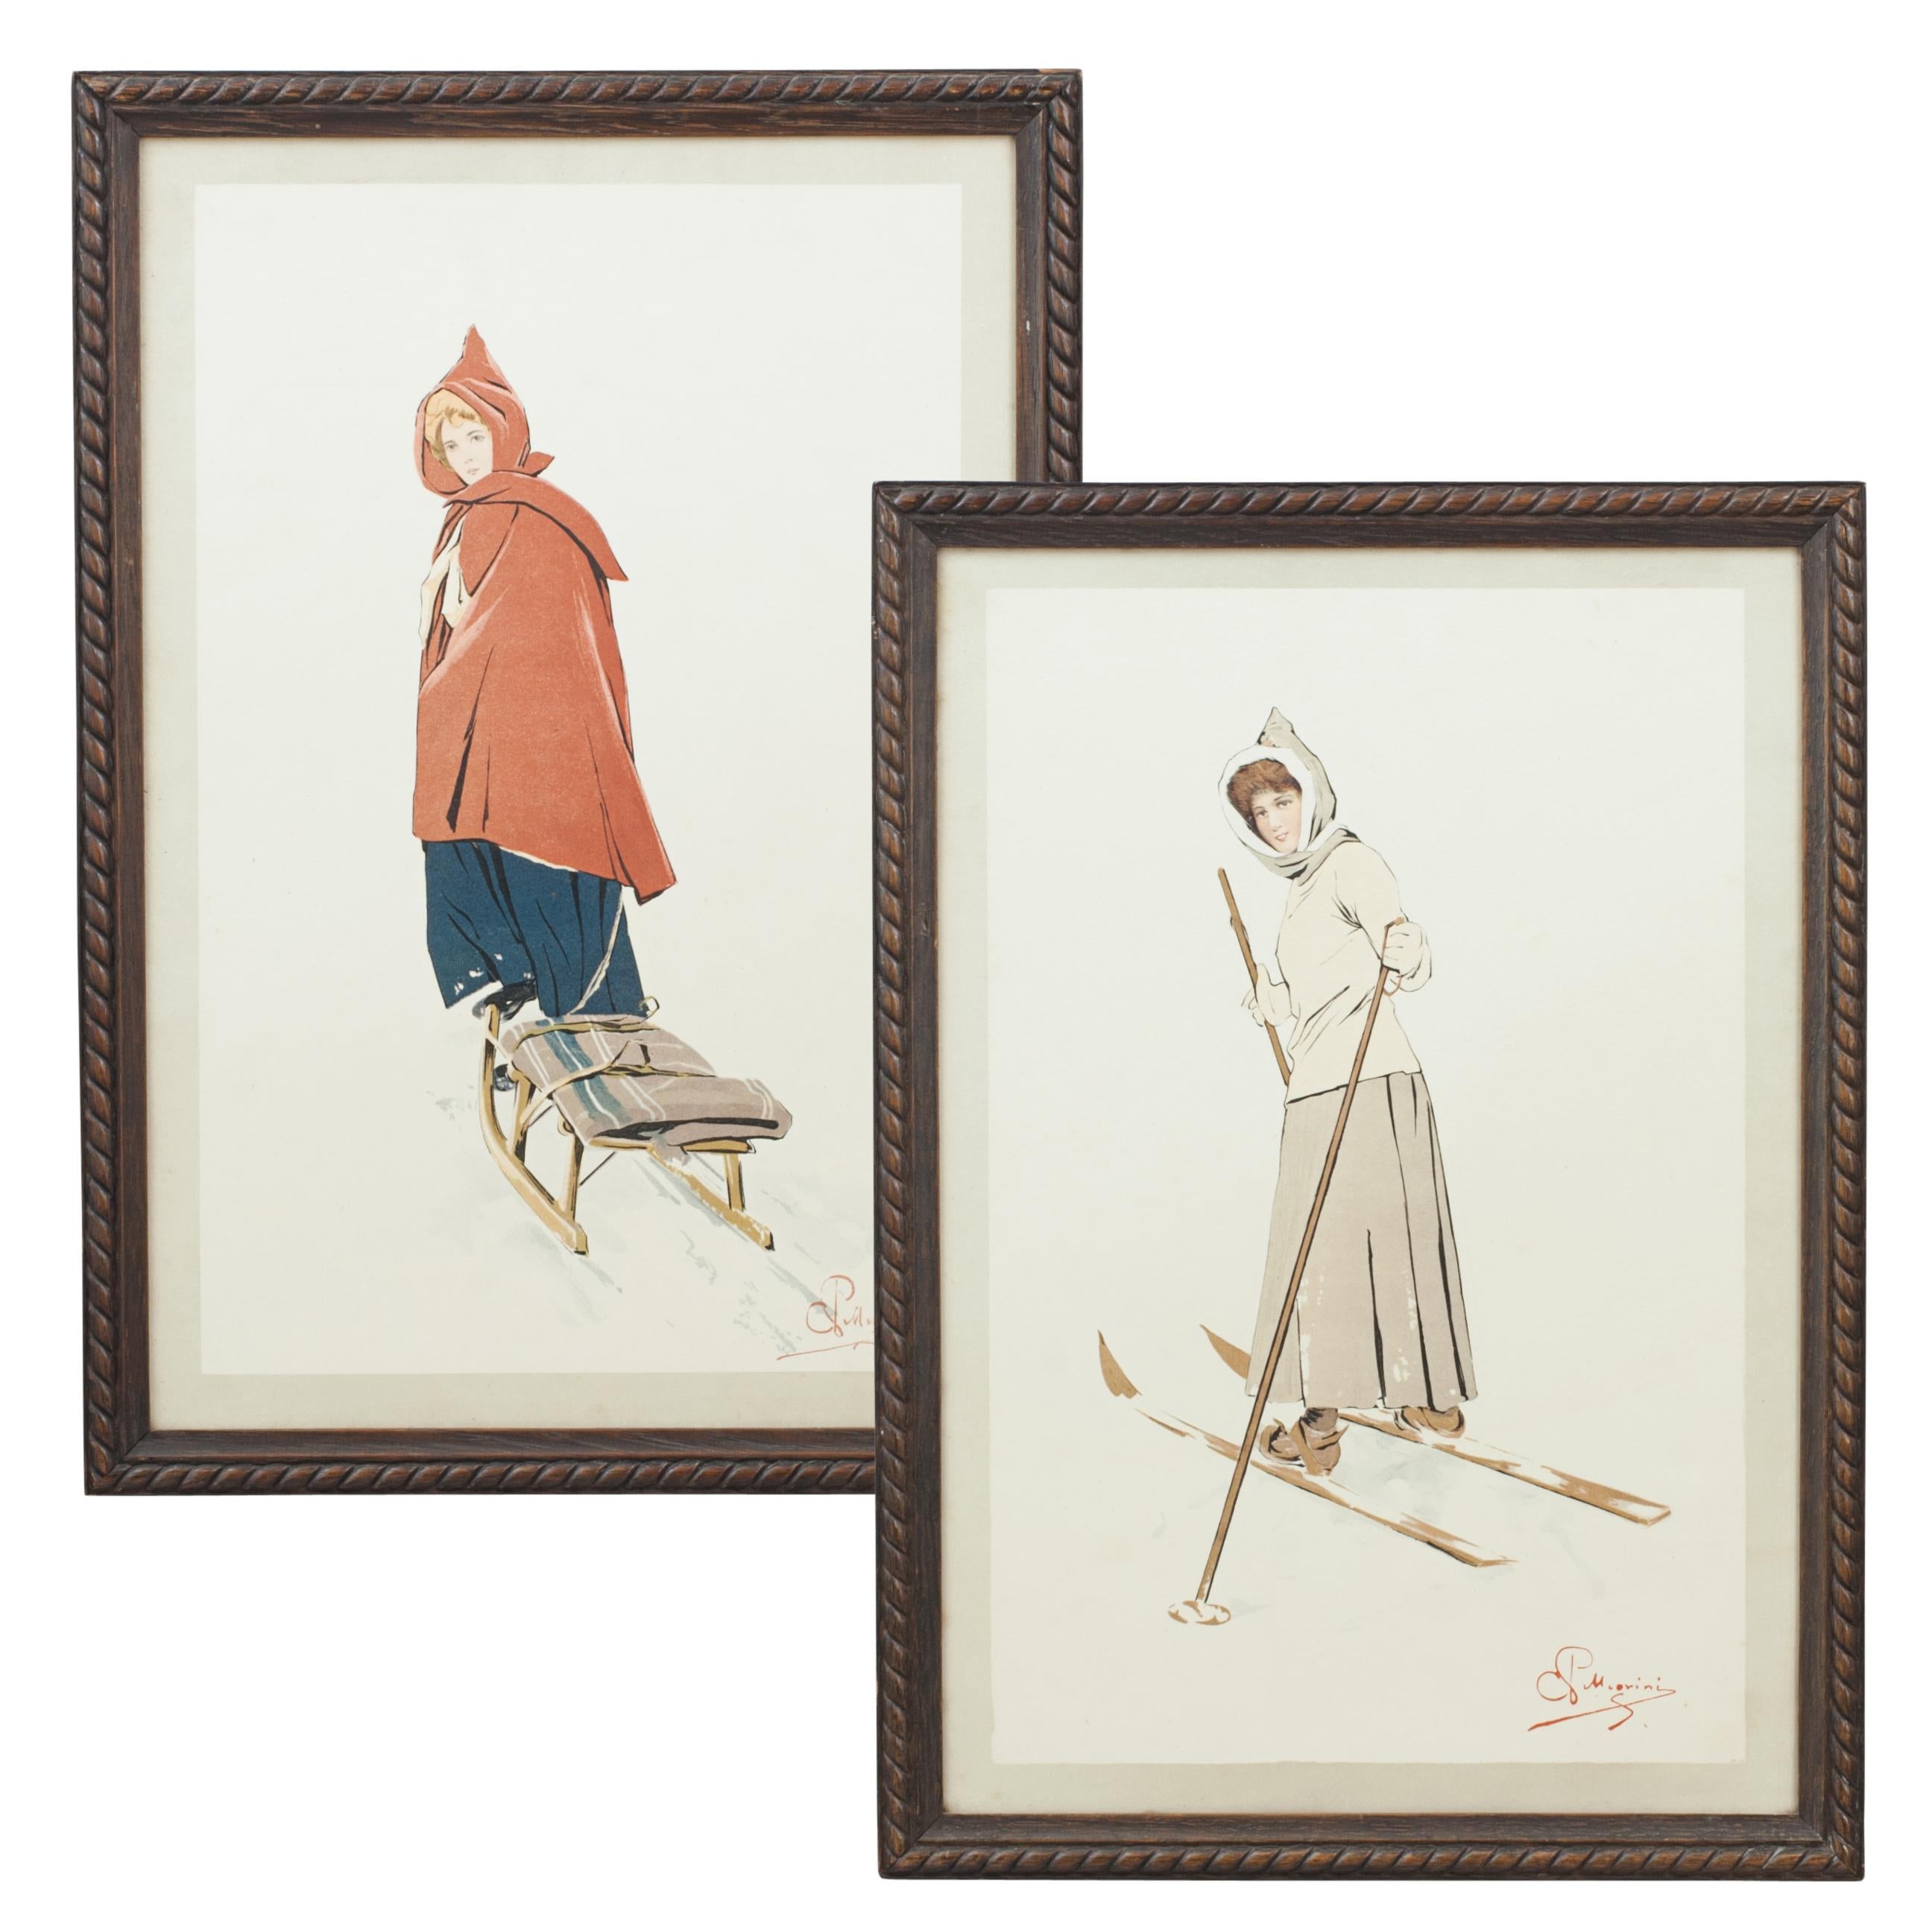 Paire de lithographies en couleurs encadrées d'après Carlo Pellegrini représentant deux femmes, l'une tirant une luge et l'autre sur une paire de skis. Cadres en bois d'origine avec bordures en corde sculptées. Pellegrini était un peintre italien du